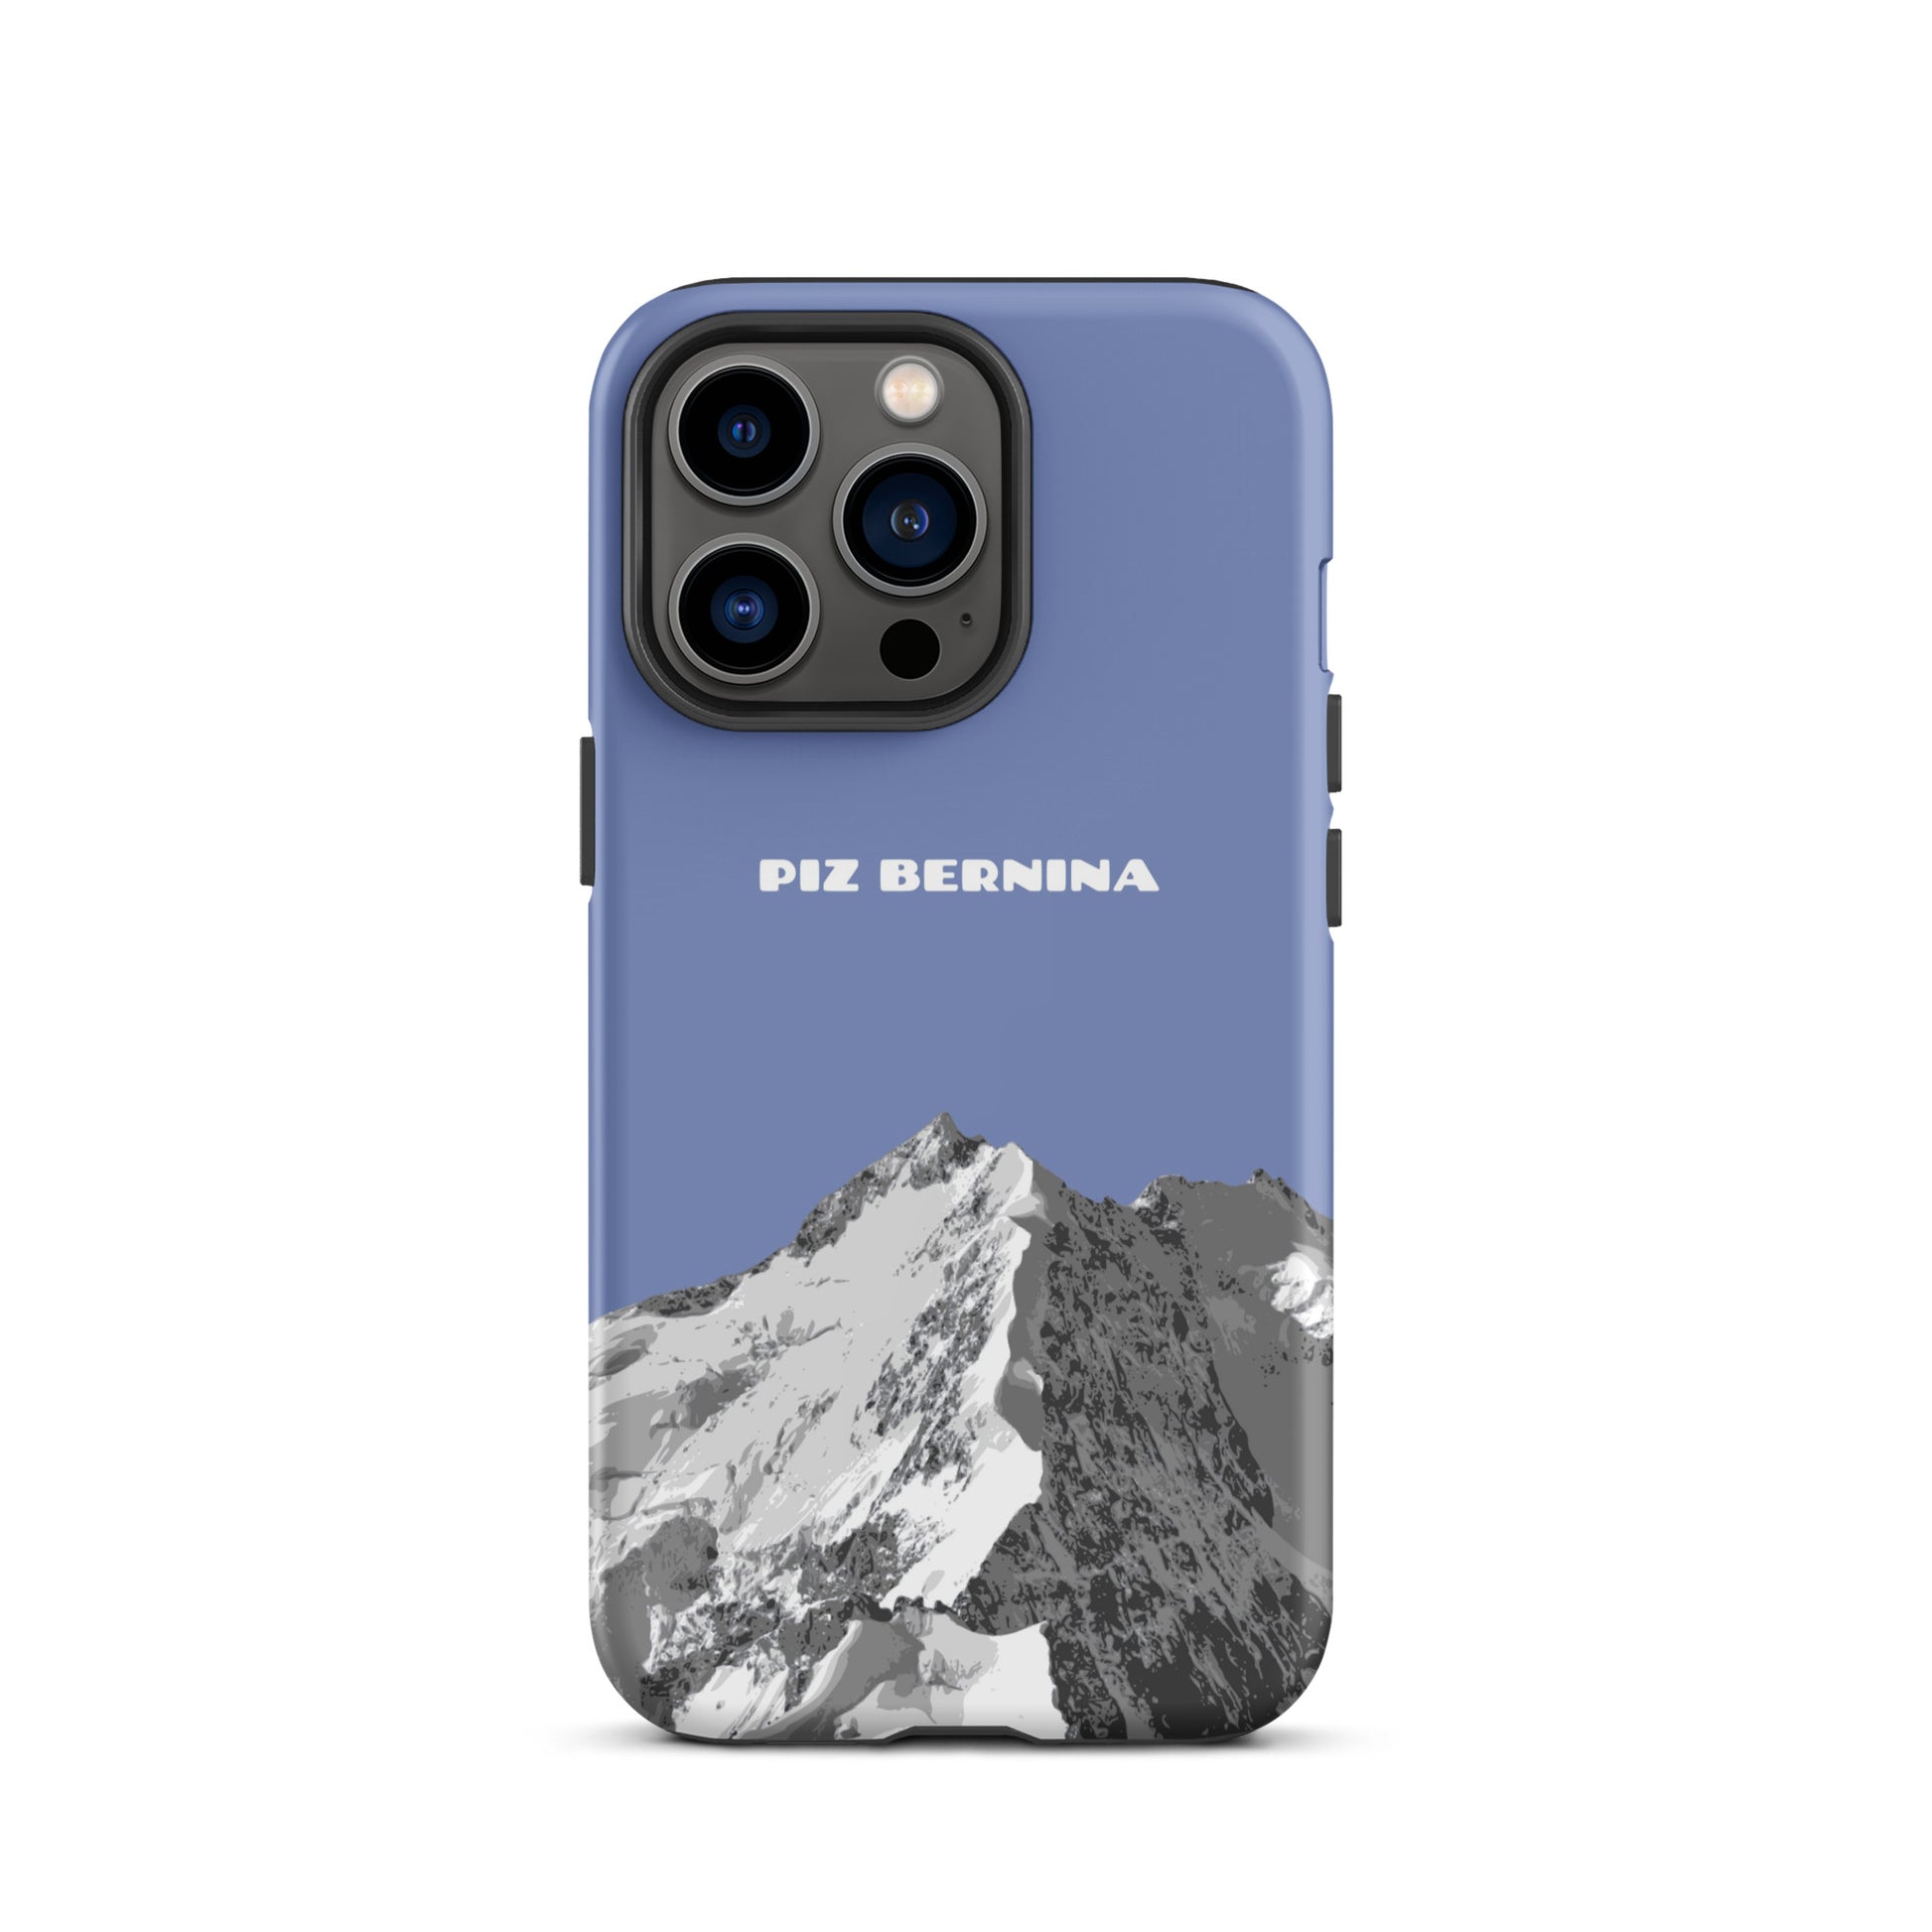 Hülle für das iPhone 13 Pro von Apple in der Farbe Pastellblau, dass den Piz Bernina in Graubünden zeigt.